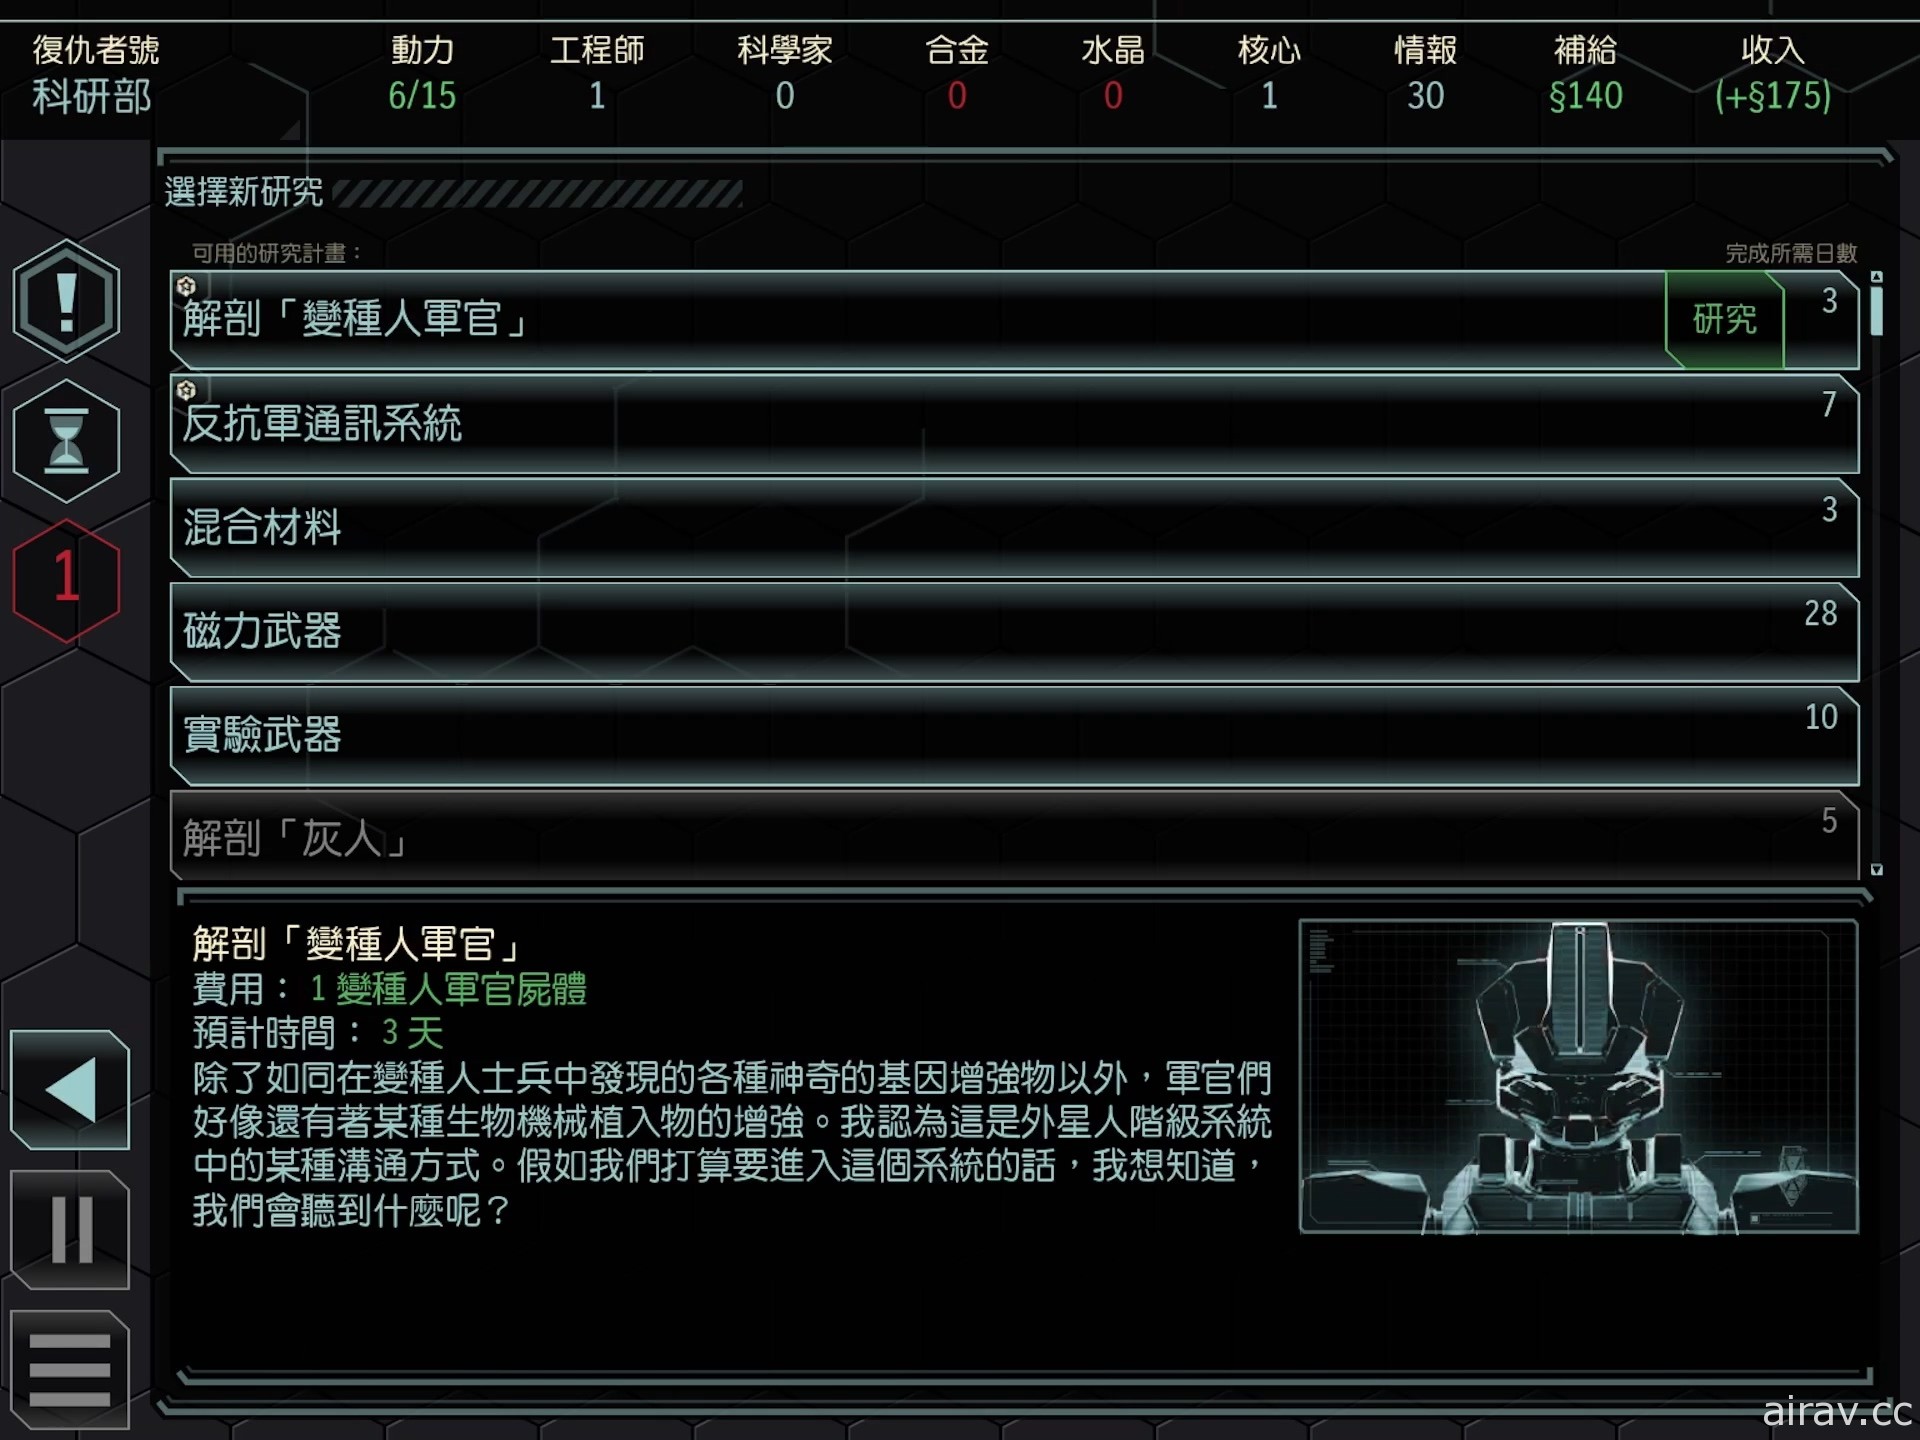 【試玩】《XCOM 2 典藏合輯》隨時隨地化身指揮官 帶領士兵反抗侵略地球的外星部隊